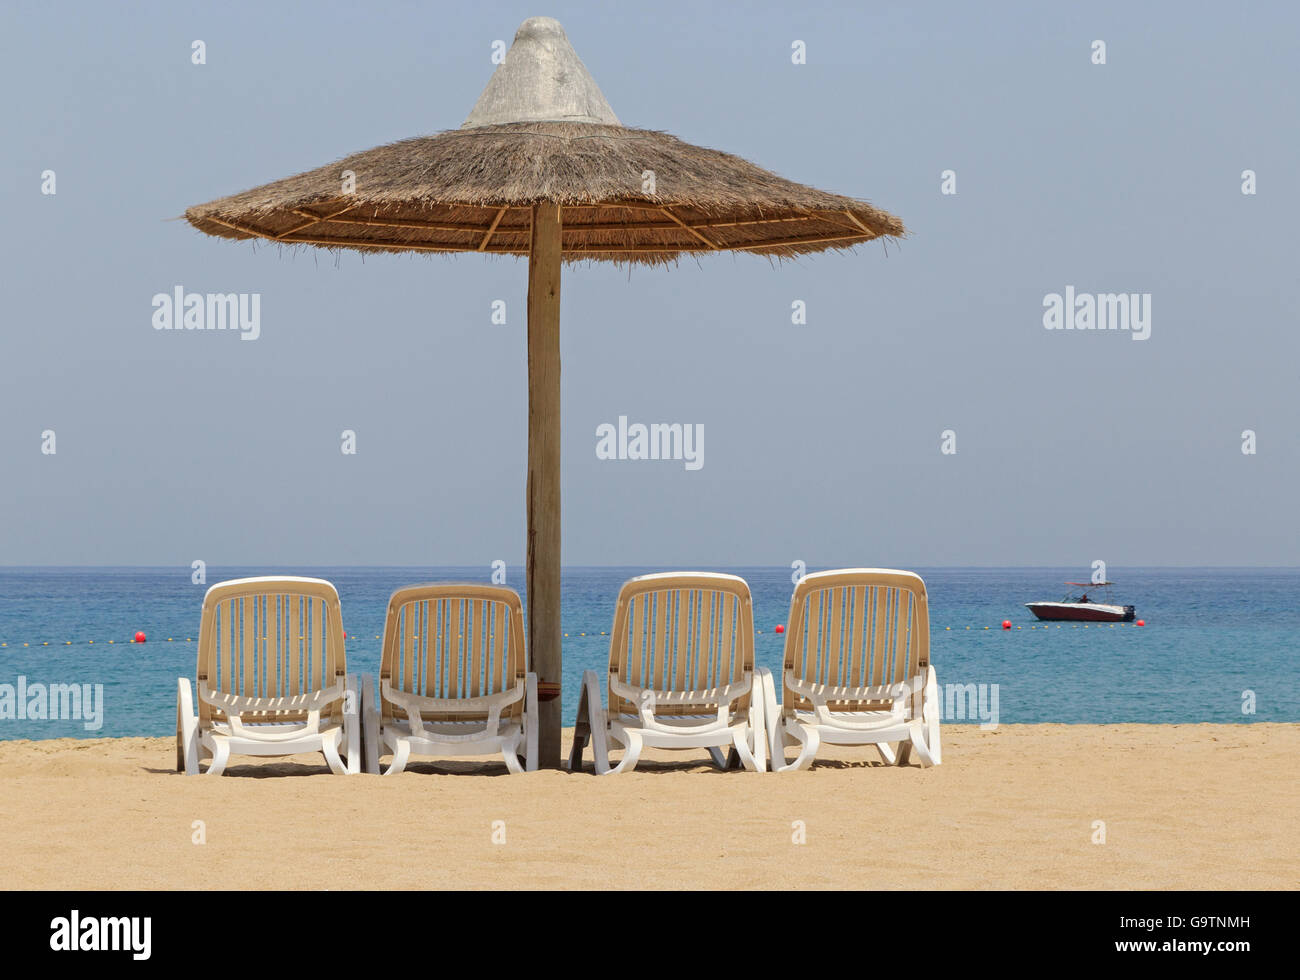 Tienda sombrilla y sillas en la playa en Fujairah, Emiratos Árabes Unidos Foto de stock